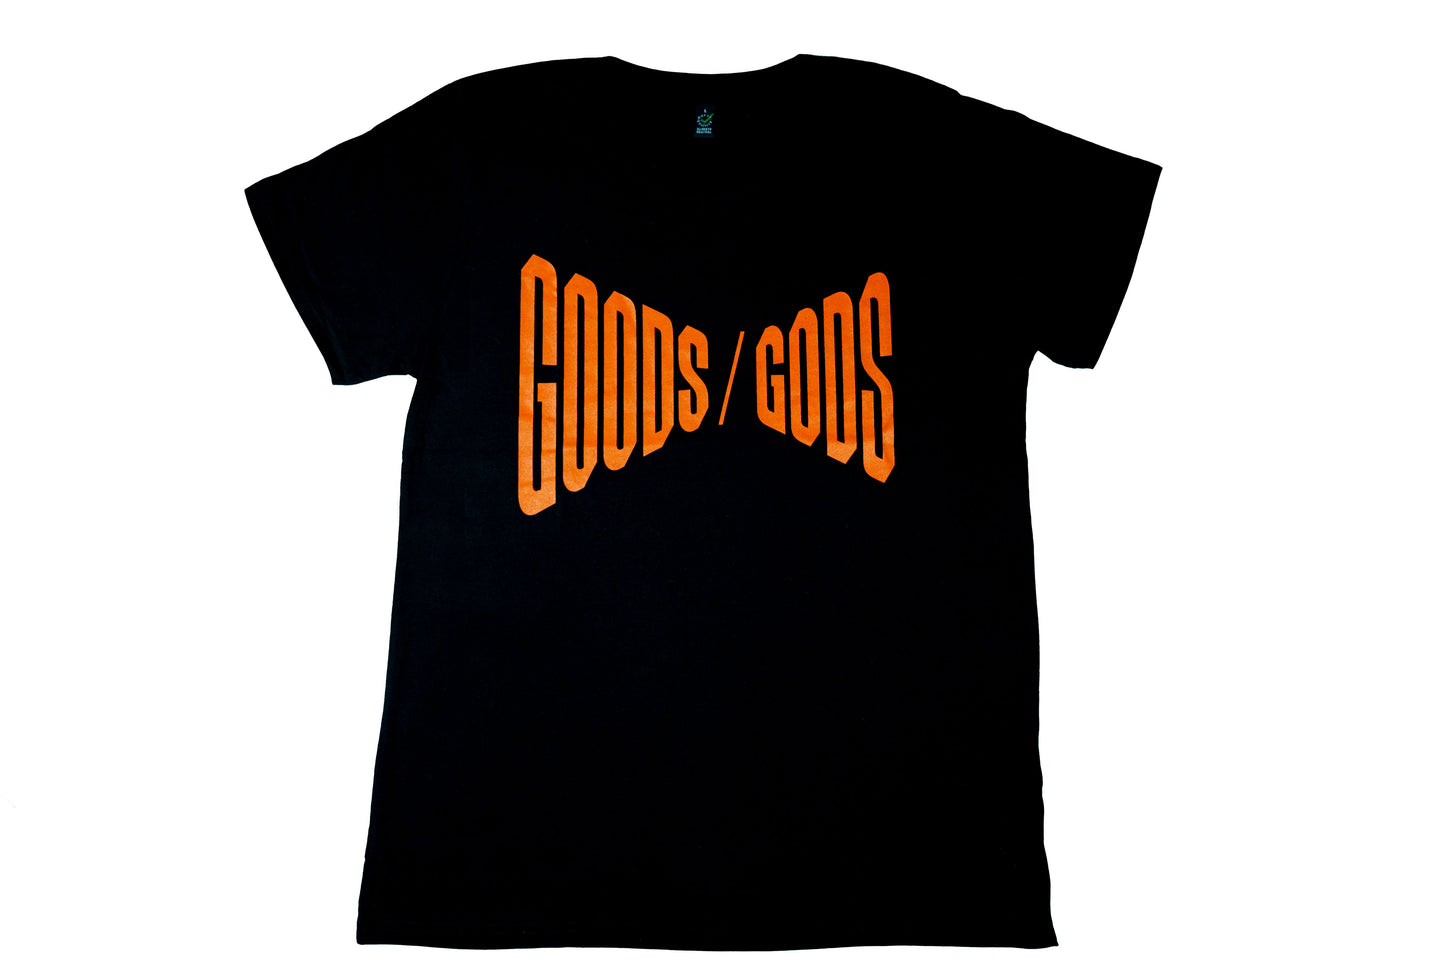 Hearts Hearts Shirt "Goods / Gods"